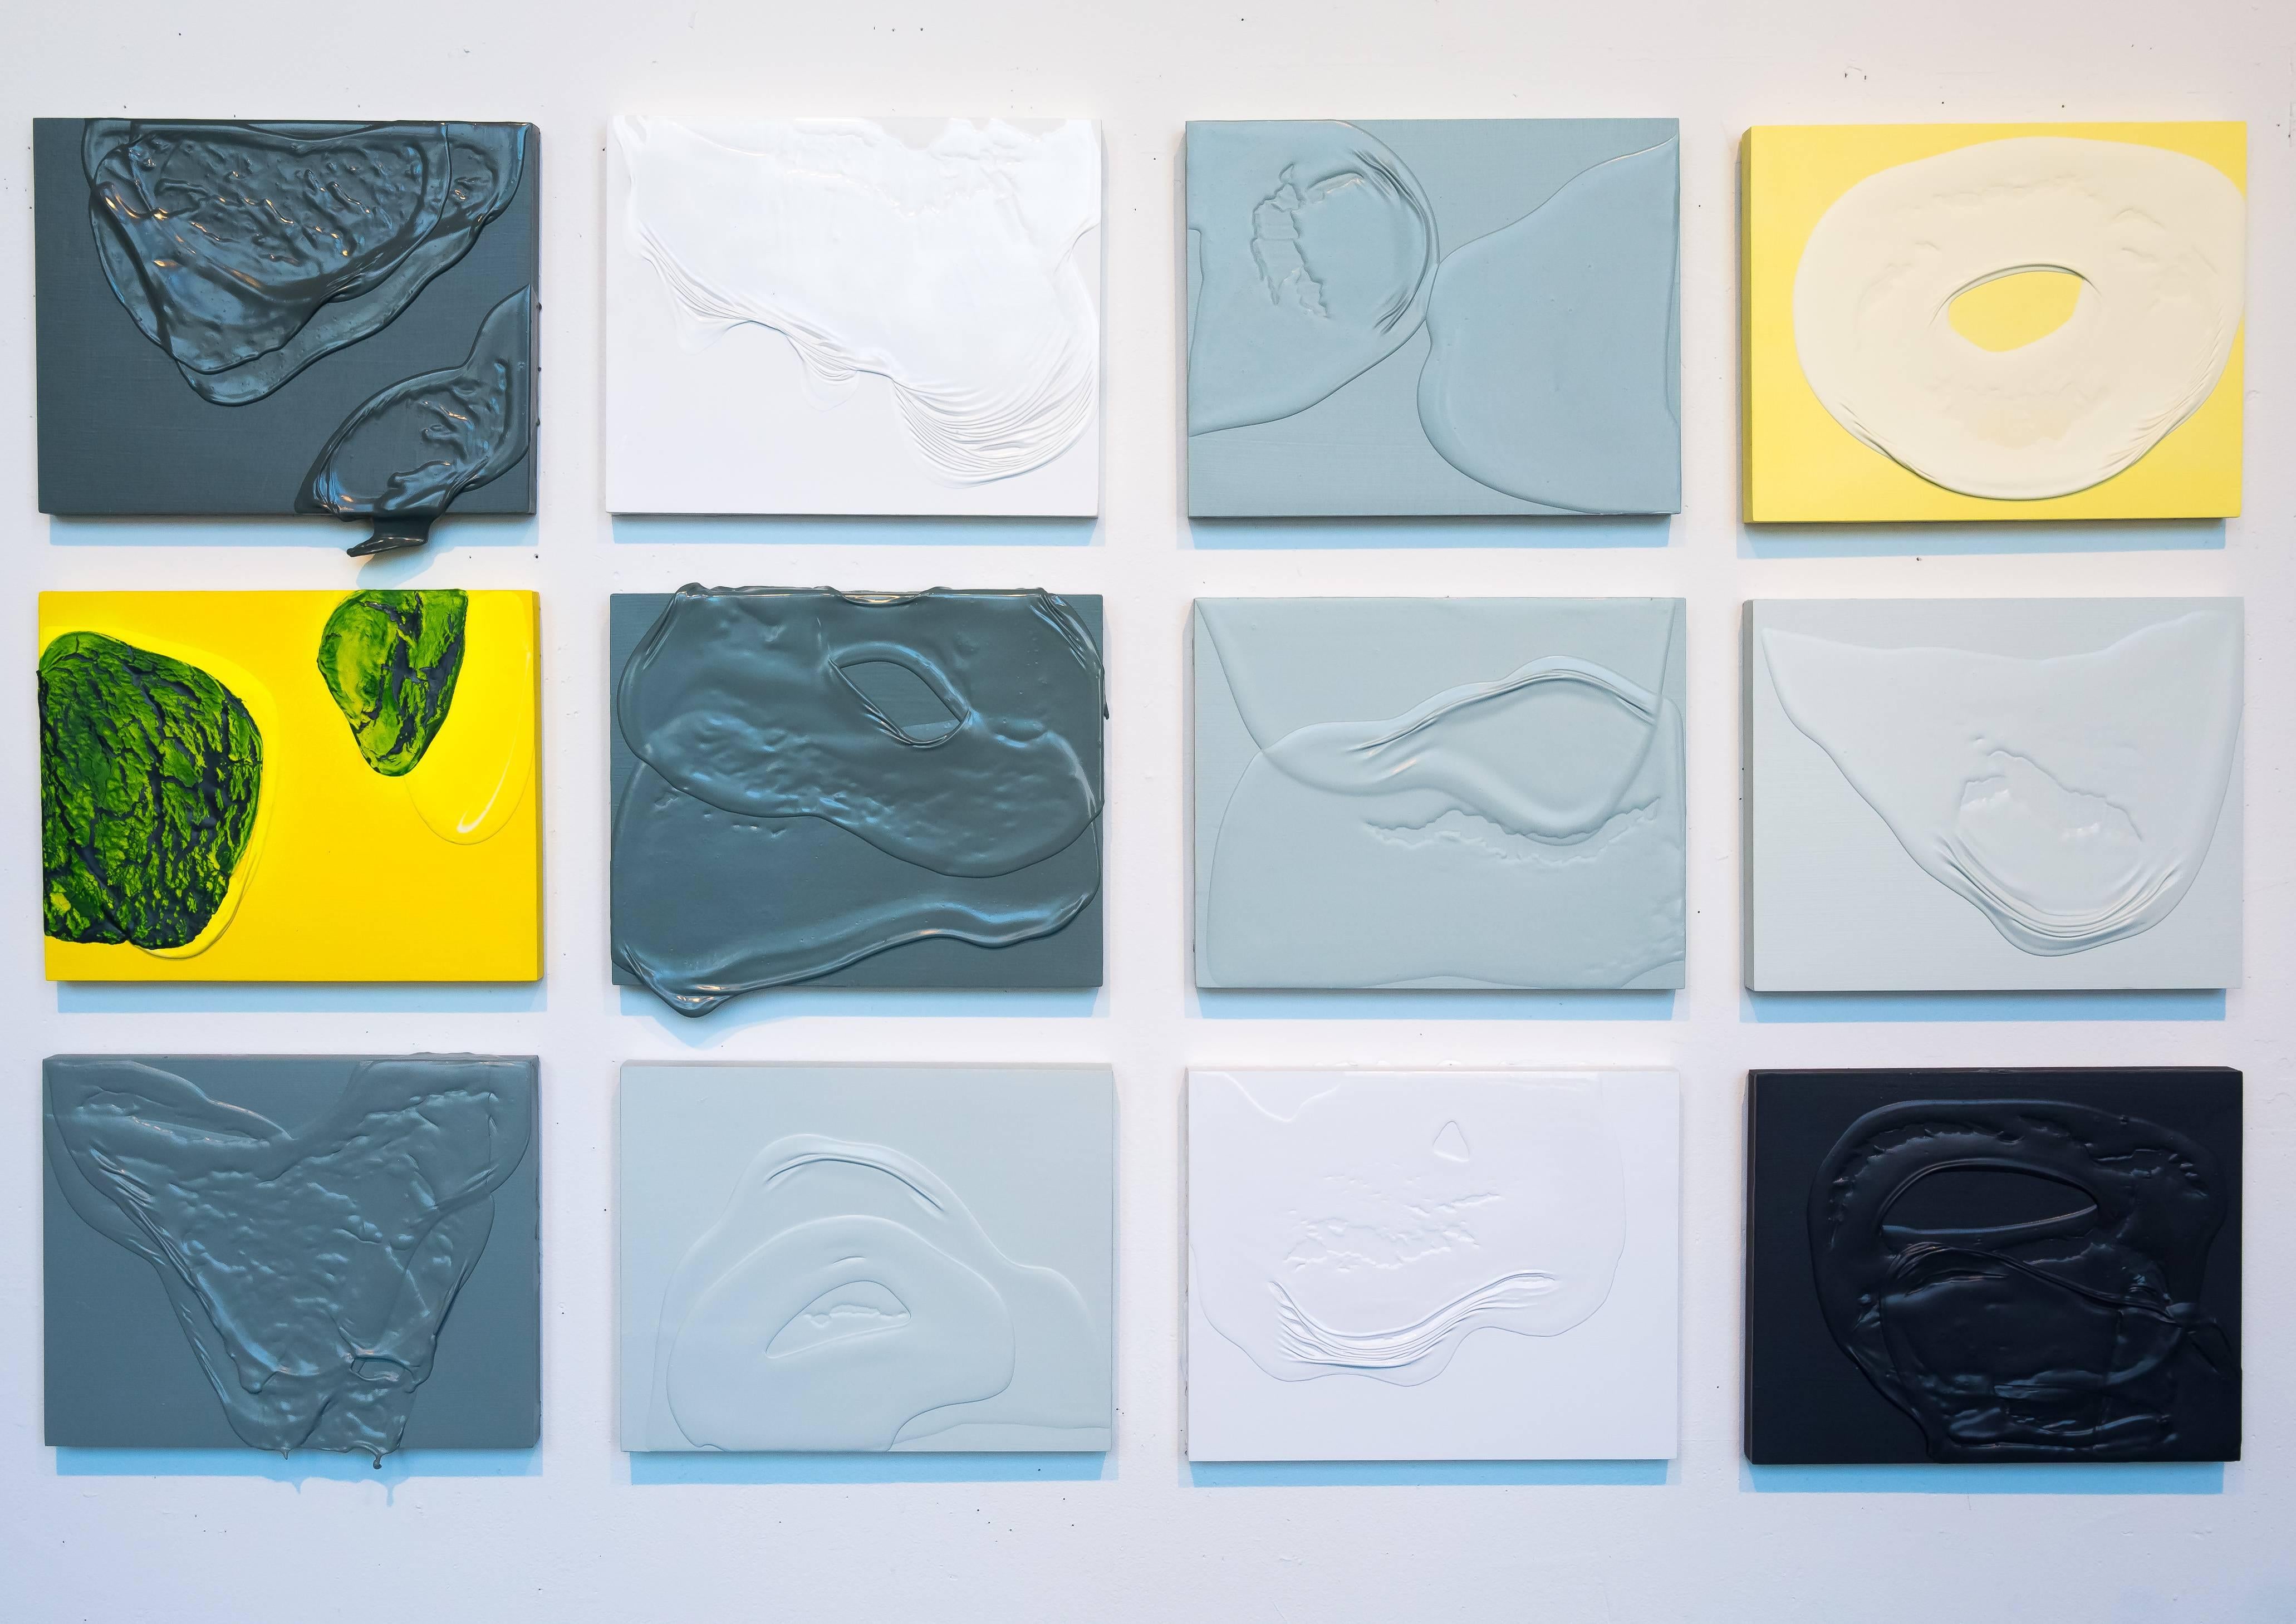 Étude de la méditation X - peinture abstraite vert et jaune - Painting de Renee Phillips